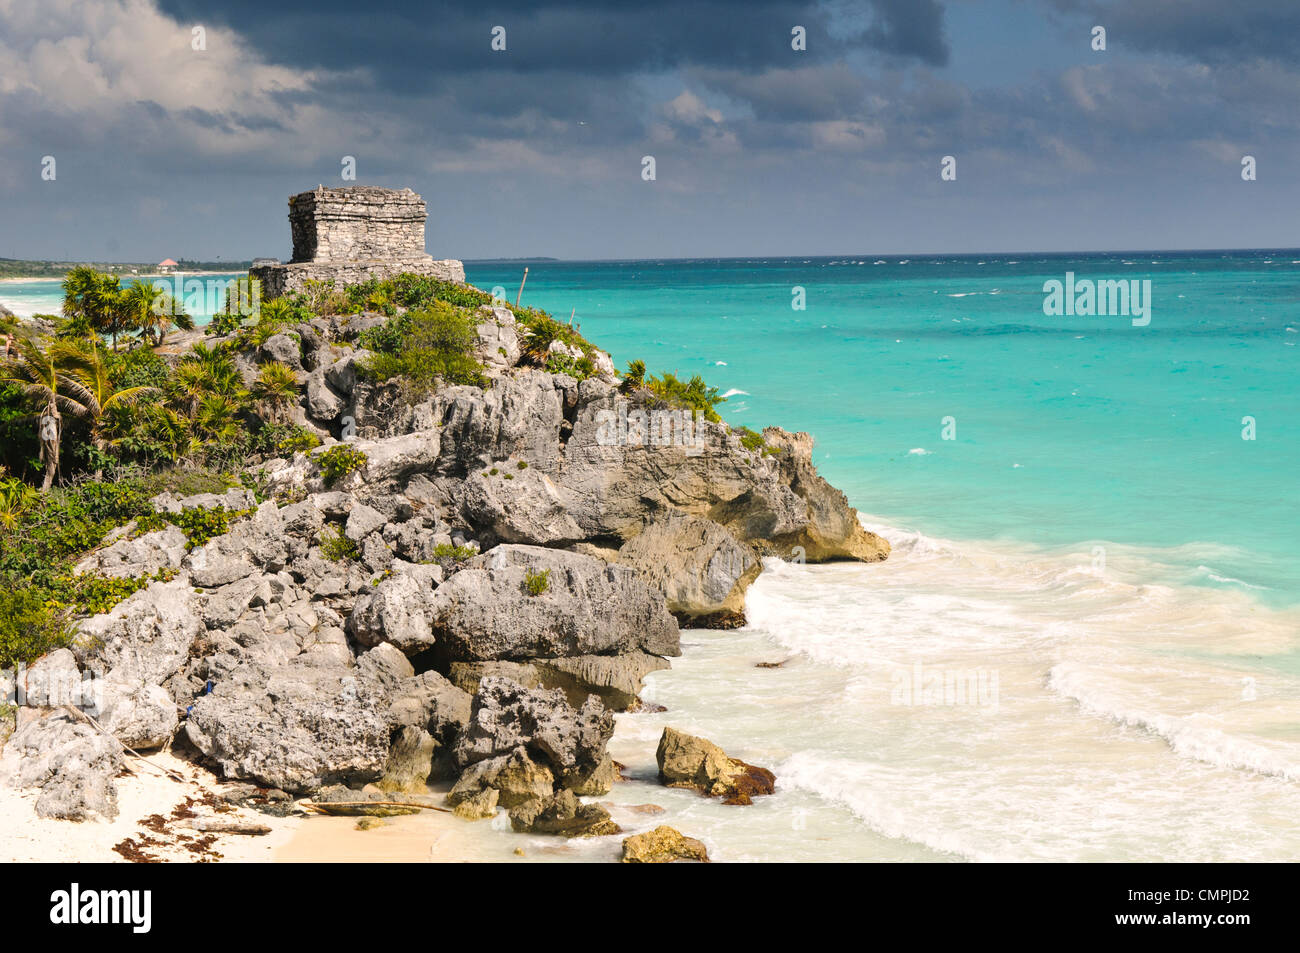 Die Ruinen der Maya-Zivilisation-Stadt in Tulum an der Küste der mexikanischen Halbinsel Yucatan. Es war einst bekannt als Zama (Morgenröte) denn am äußersten Ostrand von Mexiko, es war einer der ersten Orte im Land die Dämmerung zu sehen. Tulum war ein Handelshafen, die ausgiebig in ganz Mittelamerika und Mexiko gehandelt. Es ist jetzt ein beliebtes Touristenziel in Partei, weil es an schönen karibischen Stränden sitzt. Stockfoto